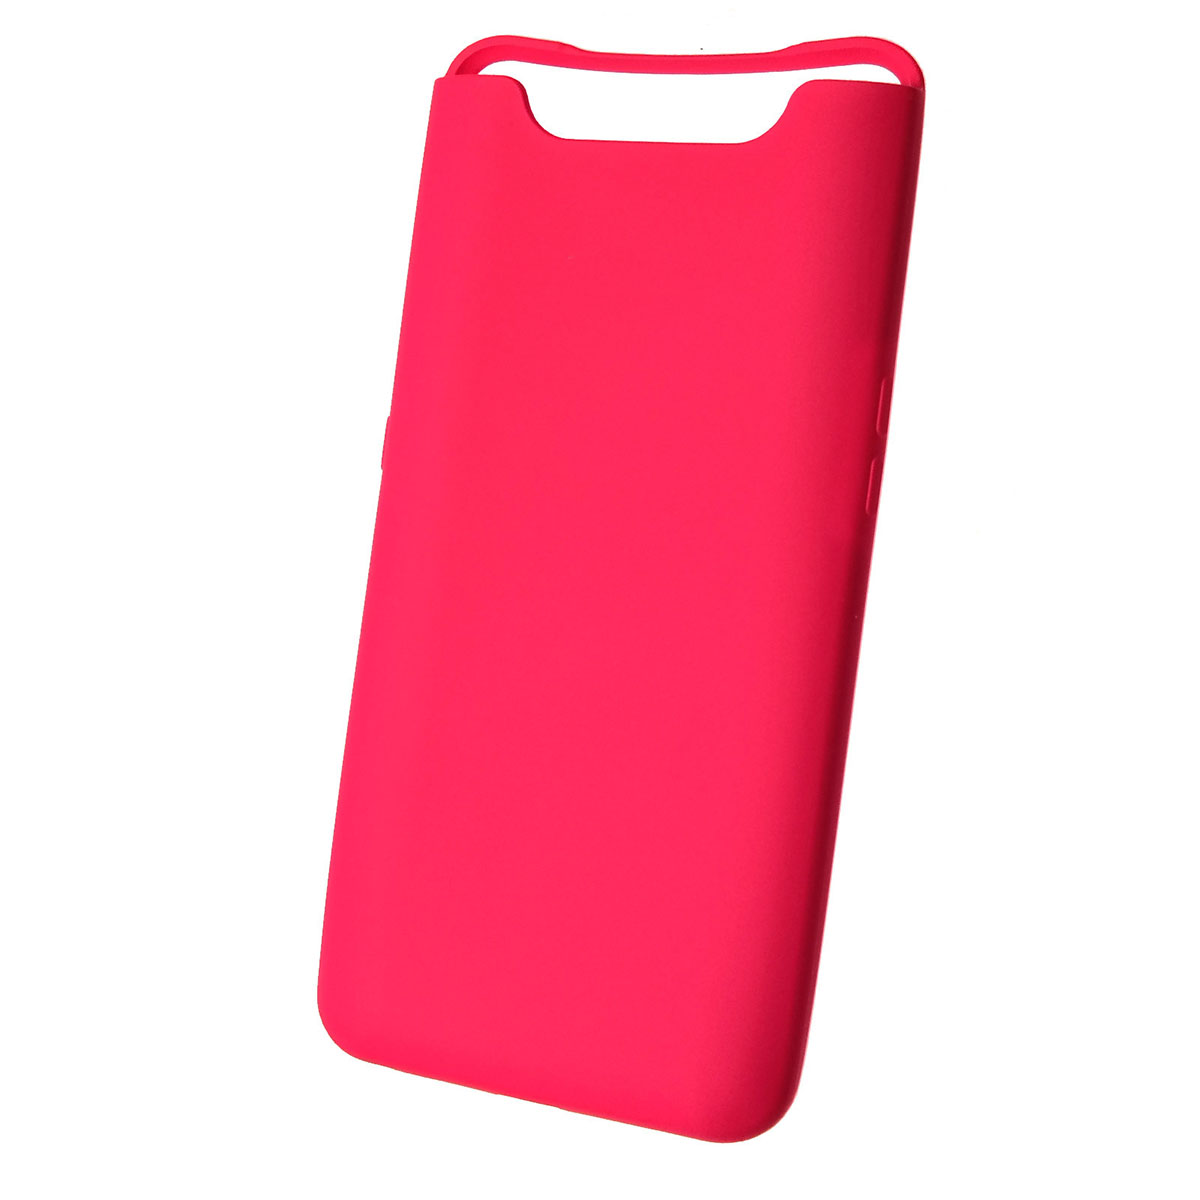 Чехол накладка Silicon Cover для Samsung A80 2019 (SM-A805), силикон, бархат, цвет карминный красный.